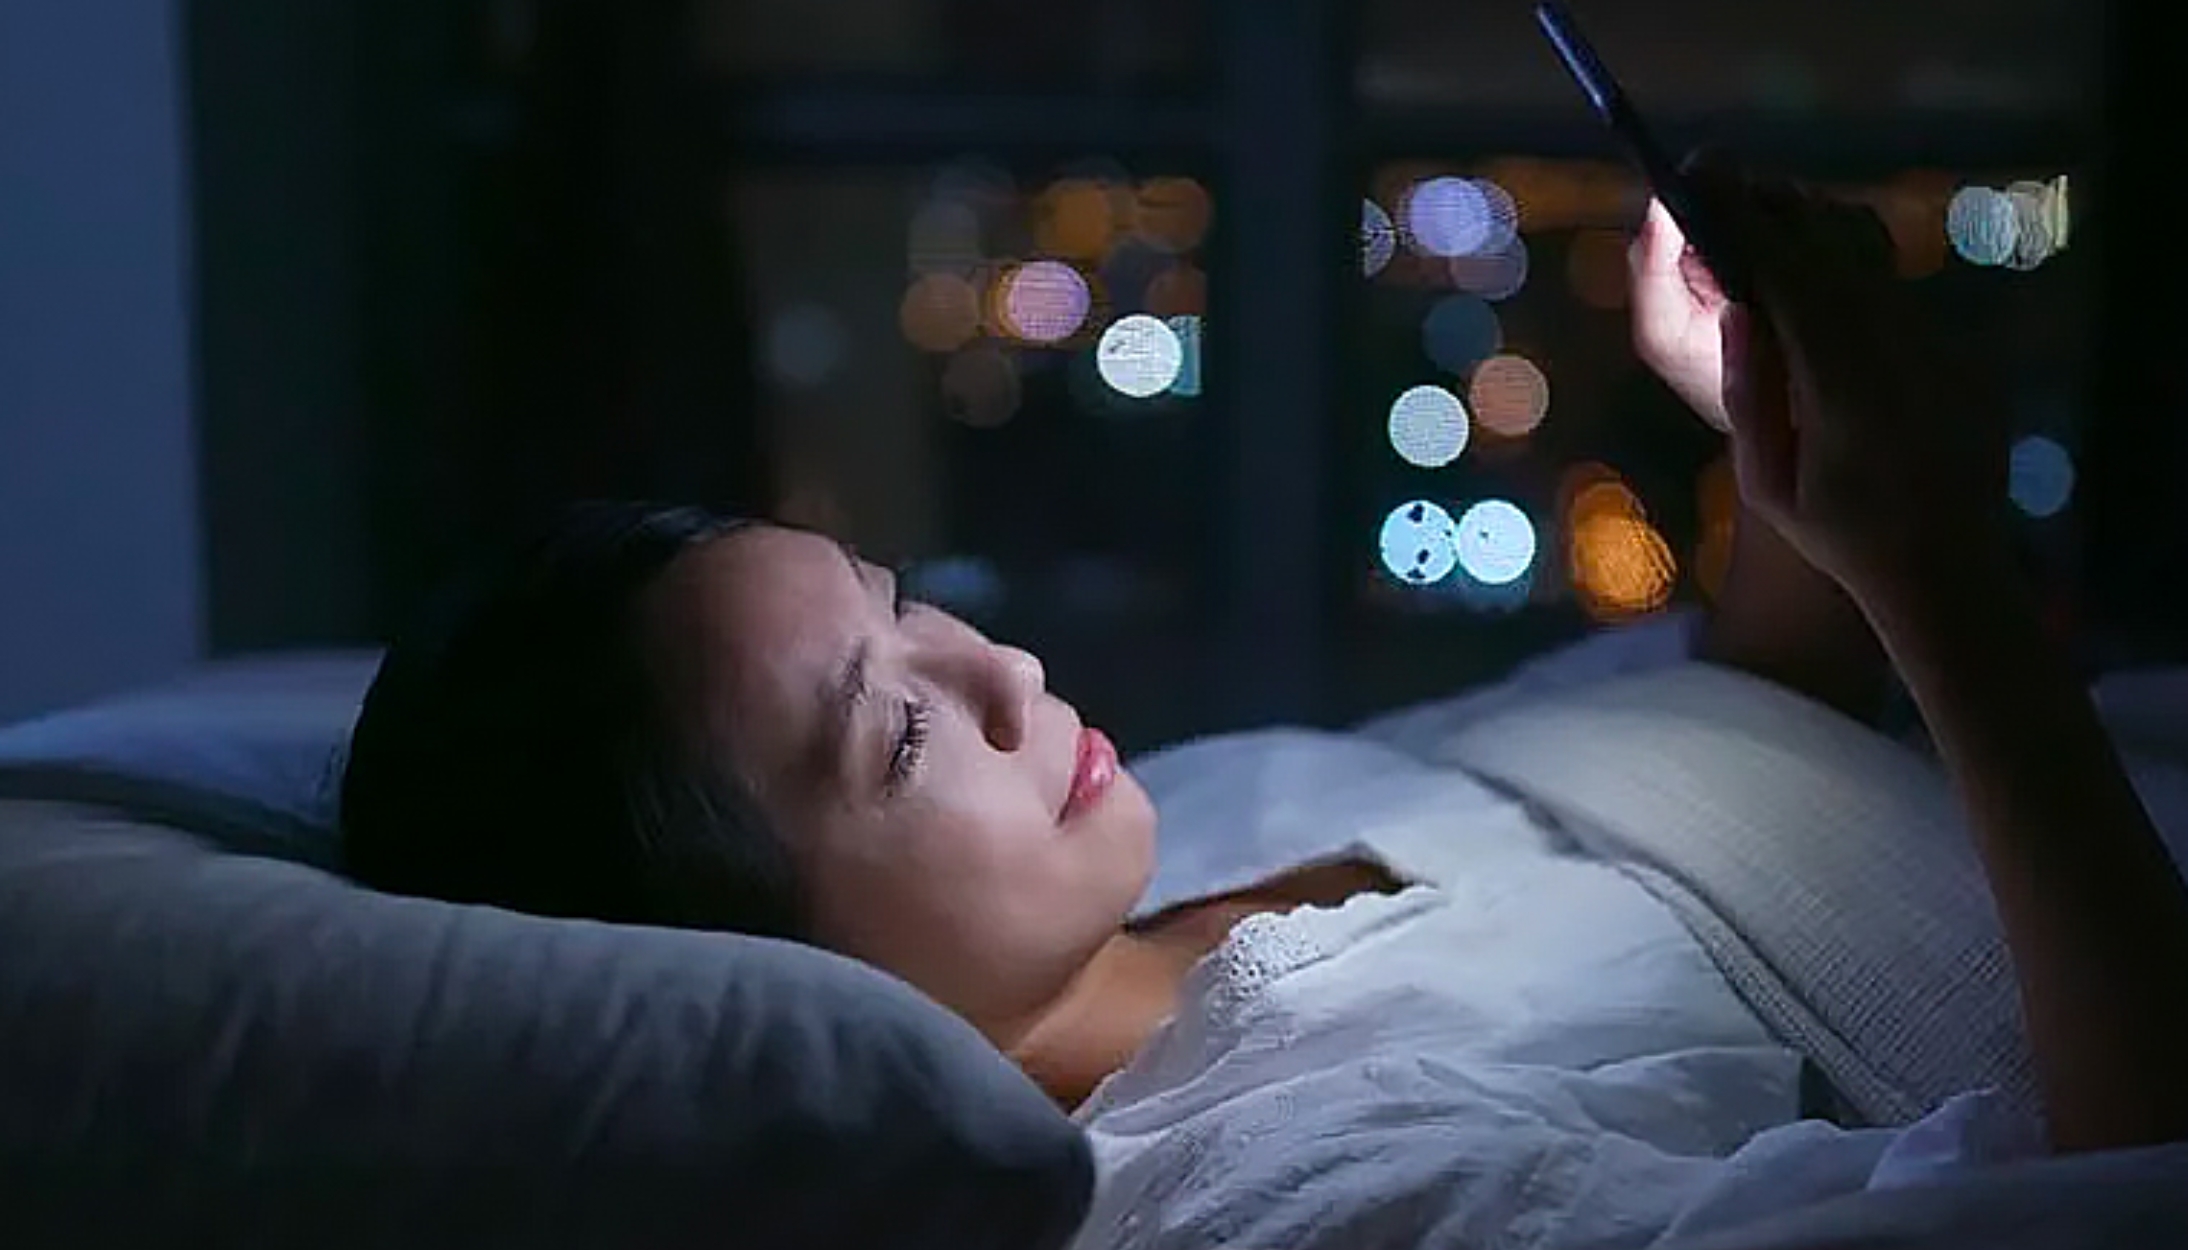 Không sử dụng điện thoại trước khi ngủ